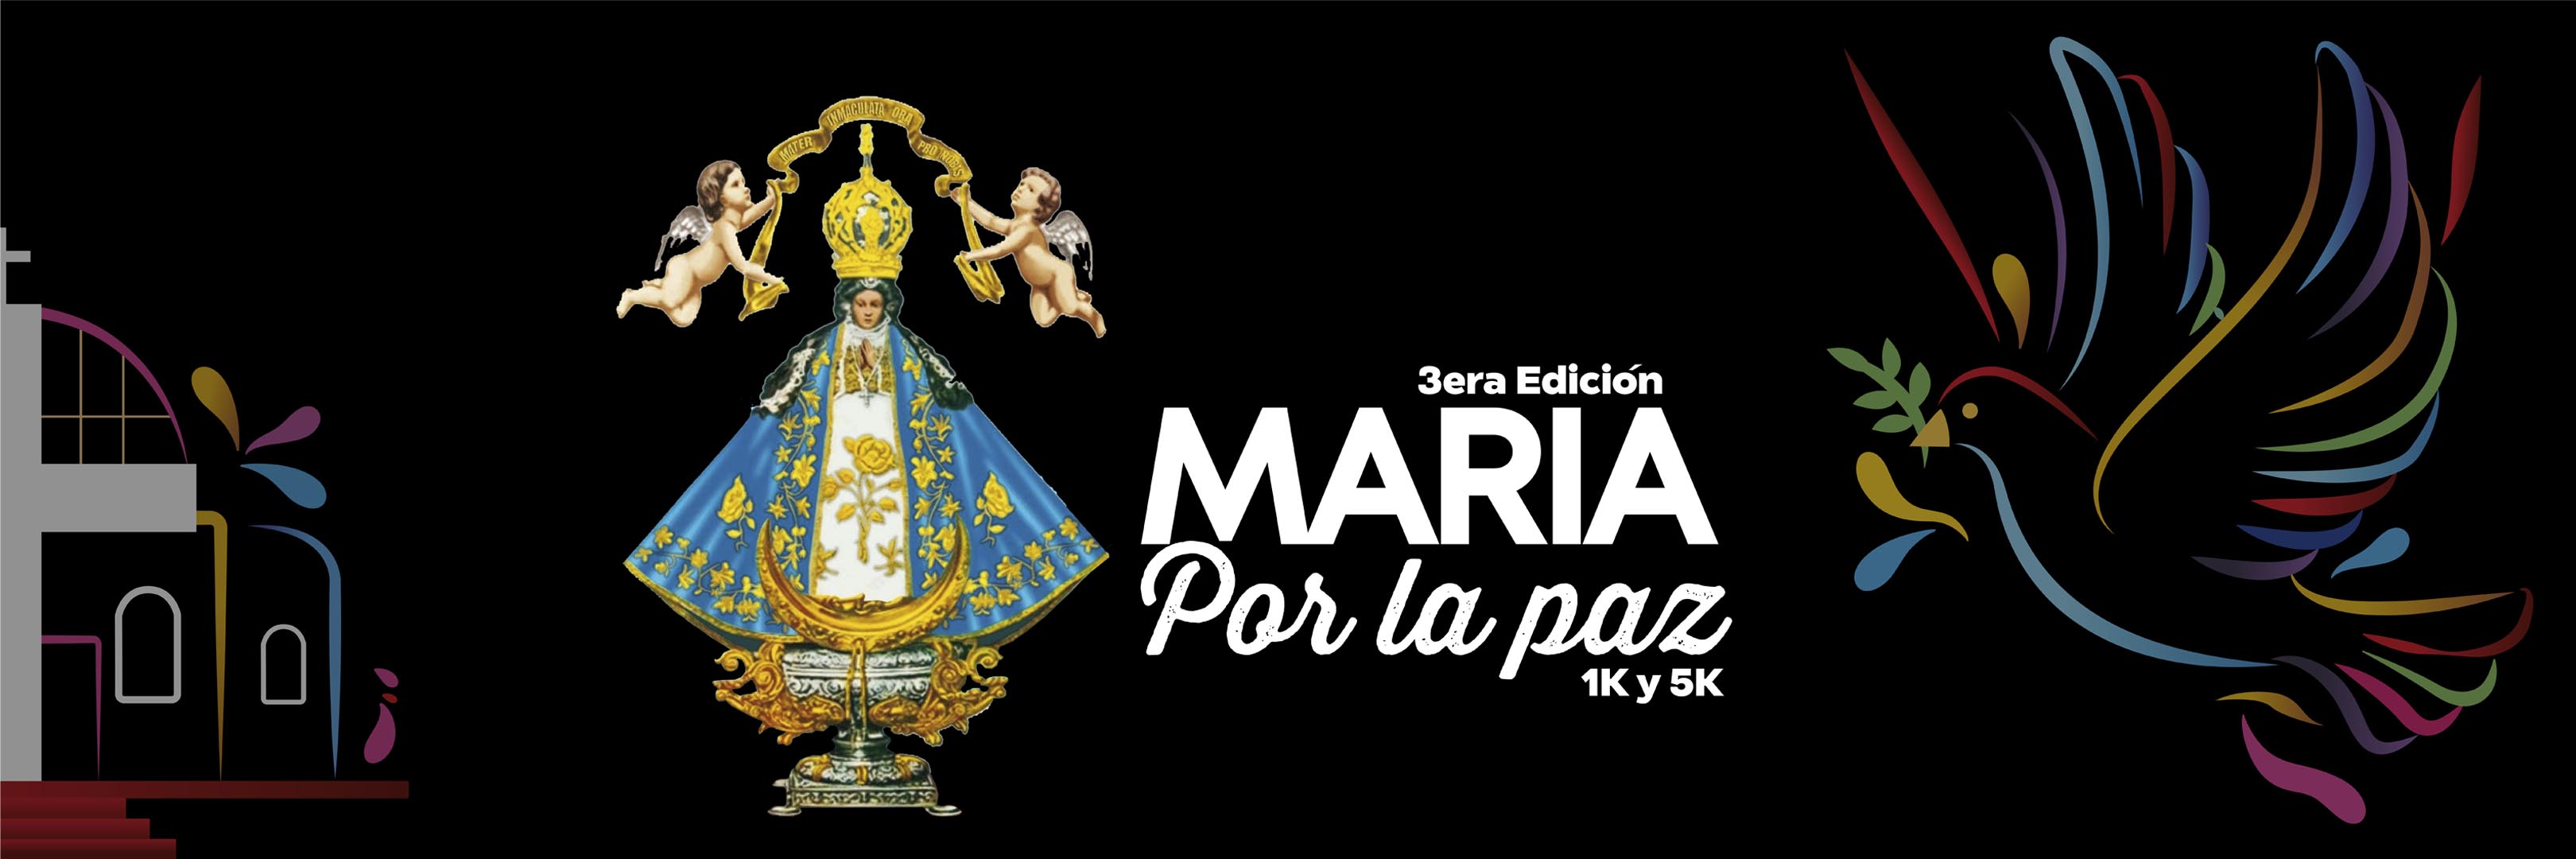 María por la paz 1K y 5K